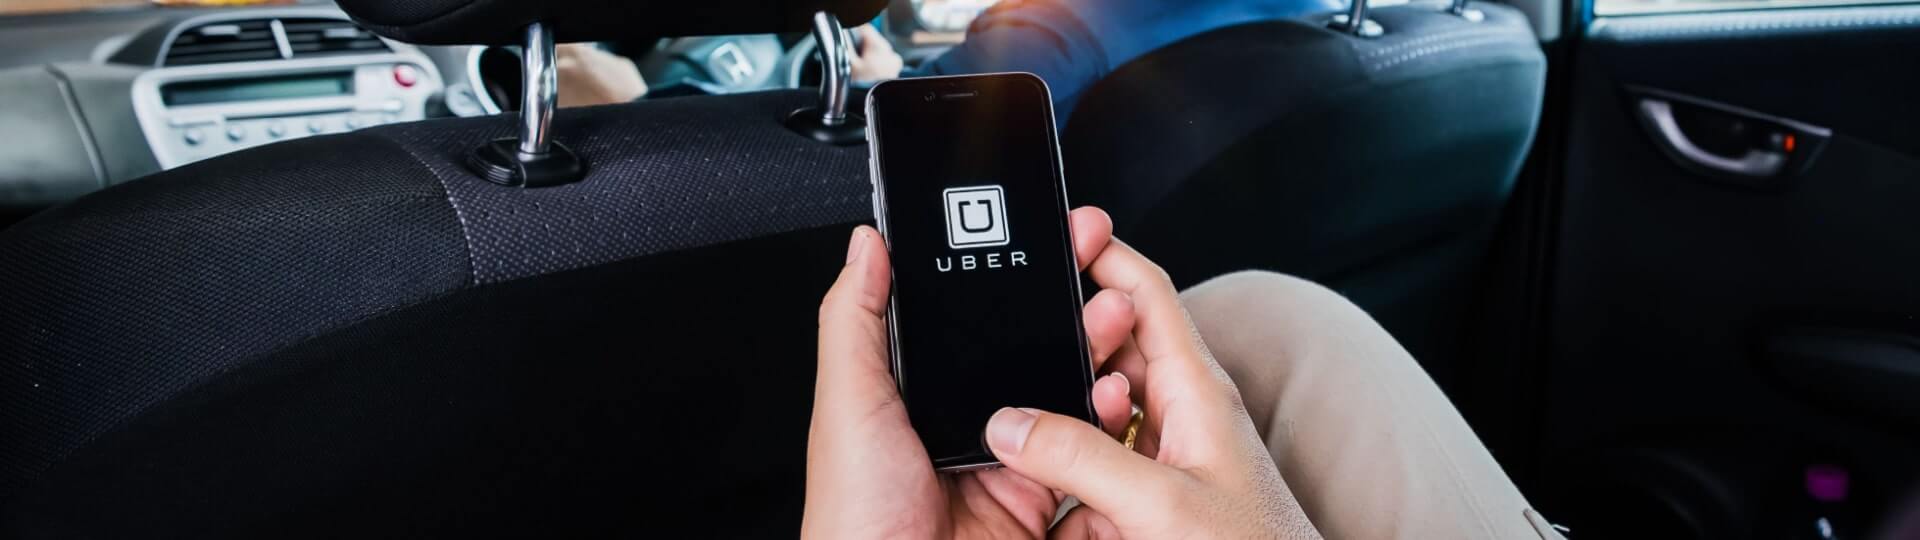 Uber zvýšil čtvrtletní tržby téměř o polovinu